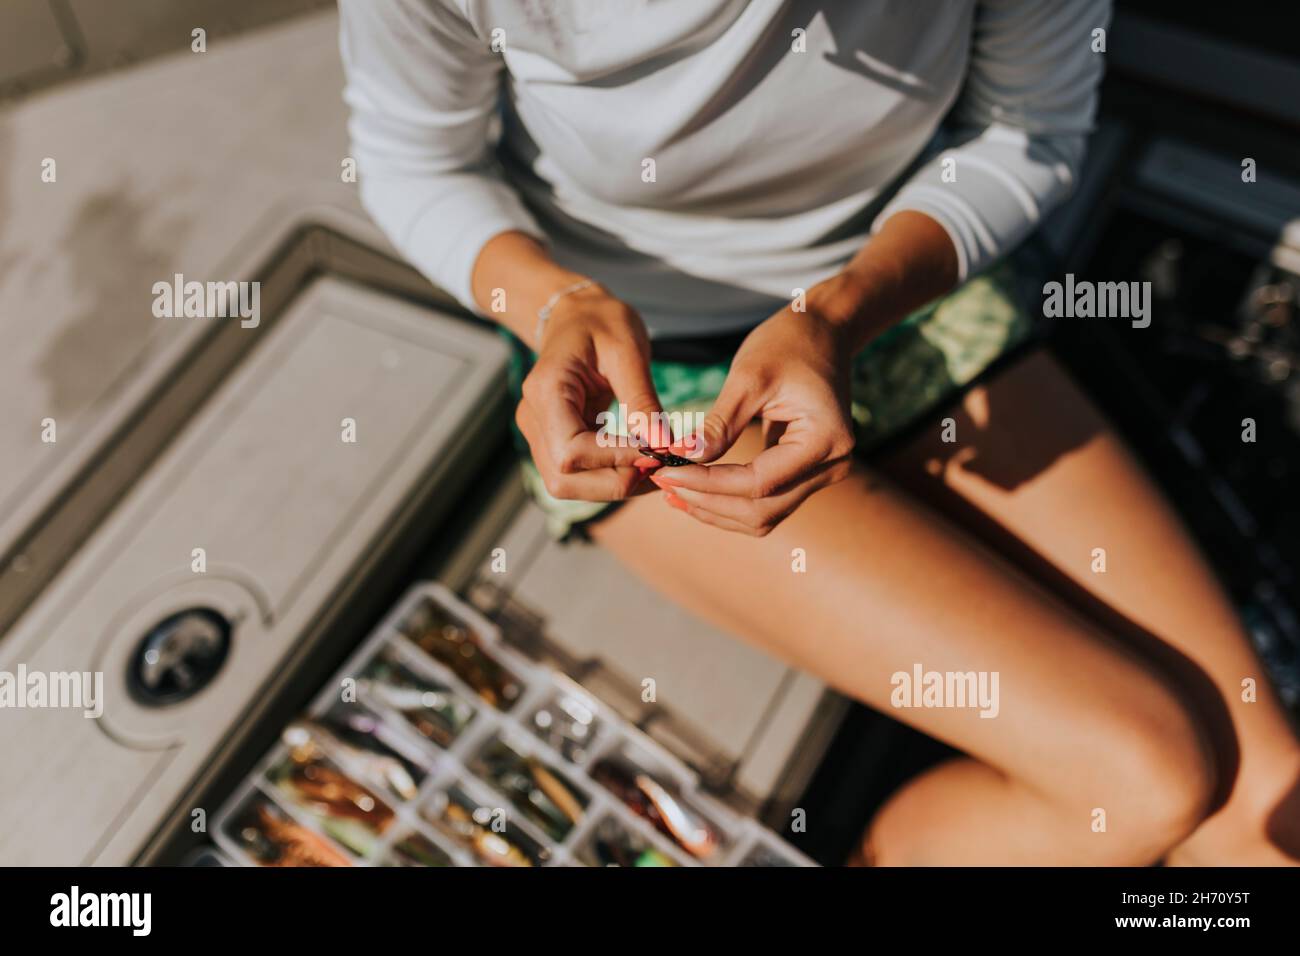 Woman's hand preparing fishing bait Stock Photo